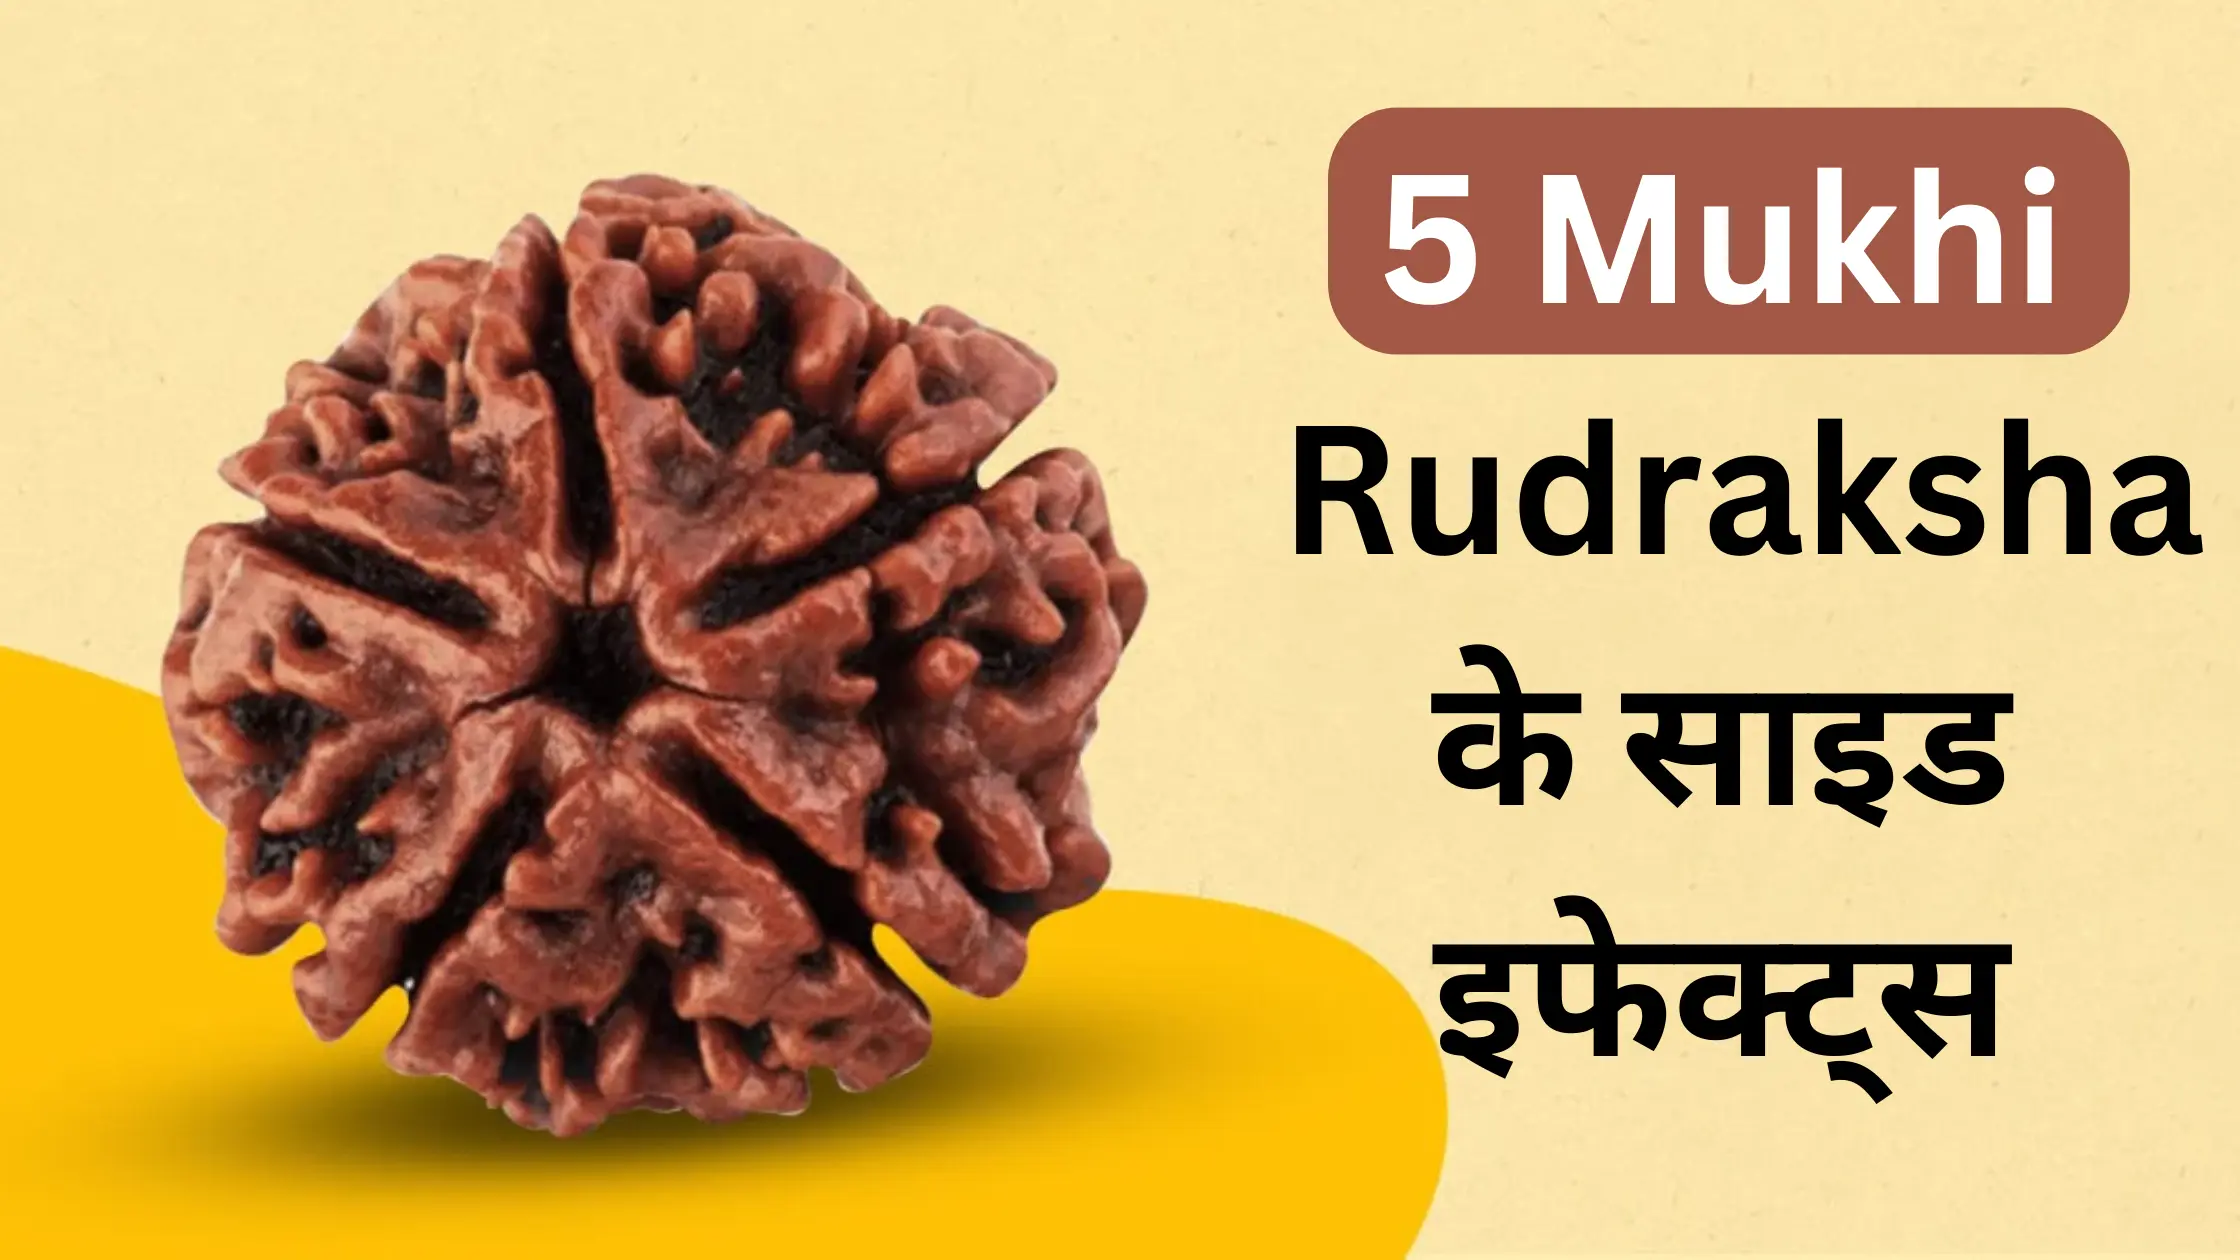 5 Mukhi Rudraksha Side Effects: क्या रुद्राक्ष पहनना चाहिए?